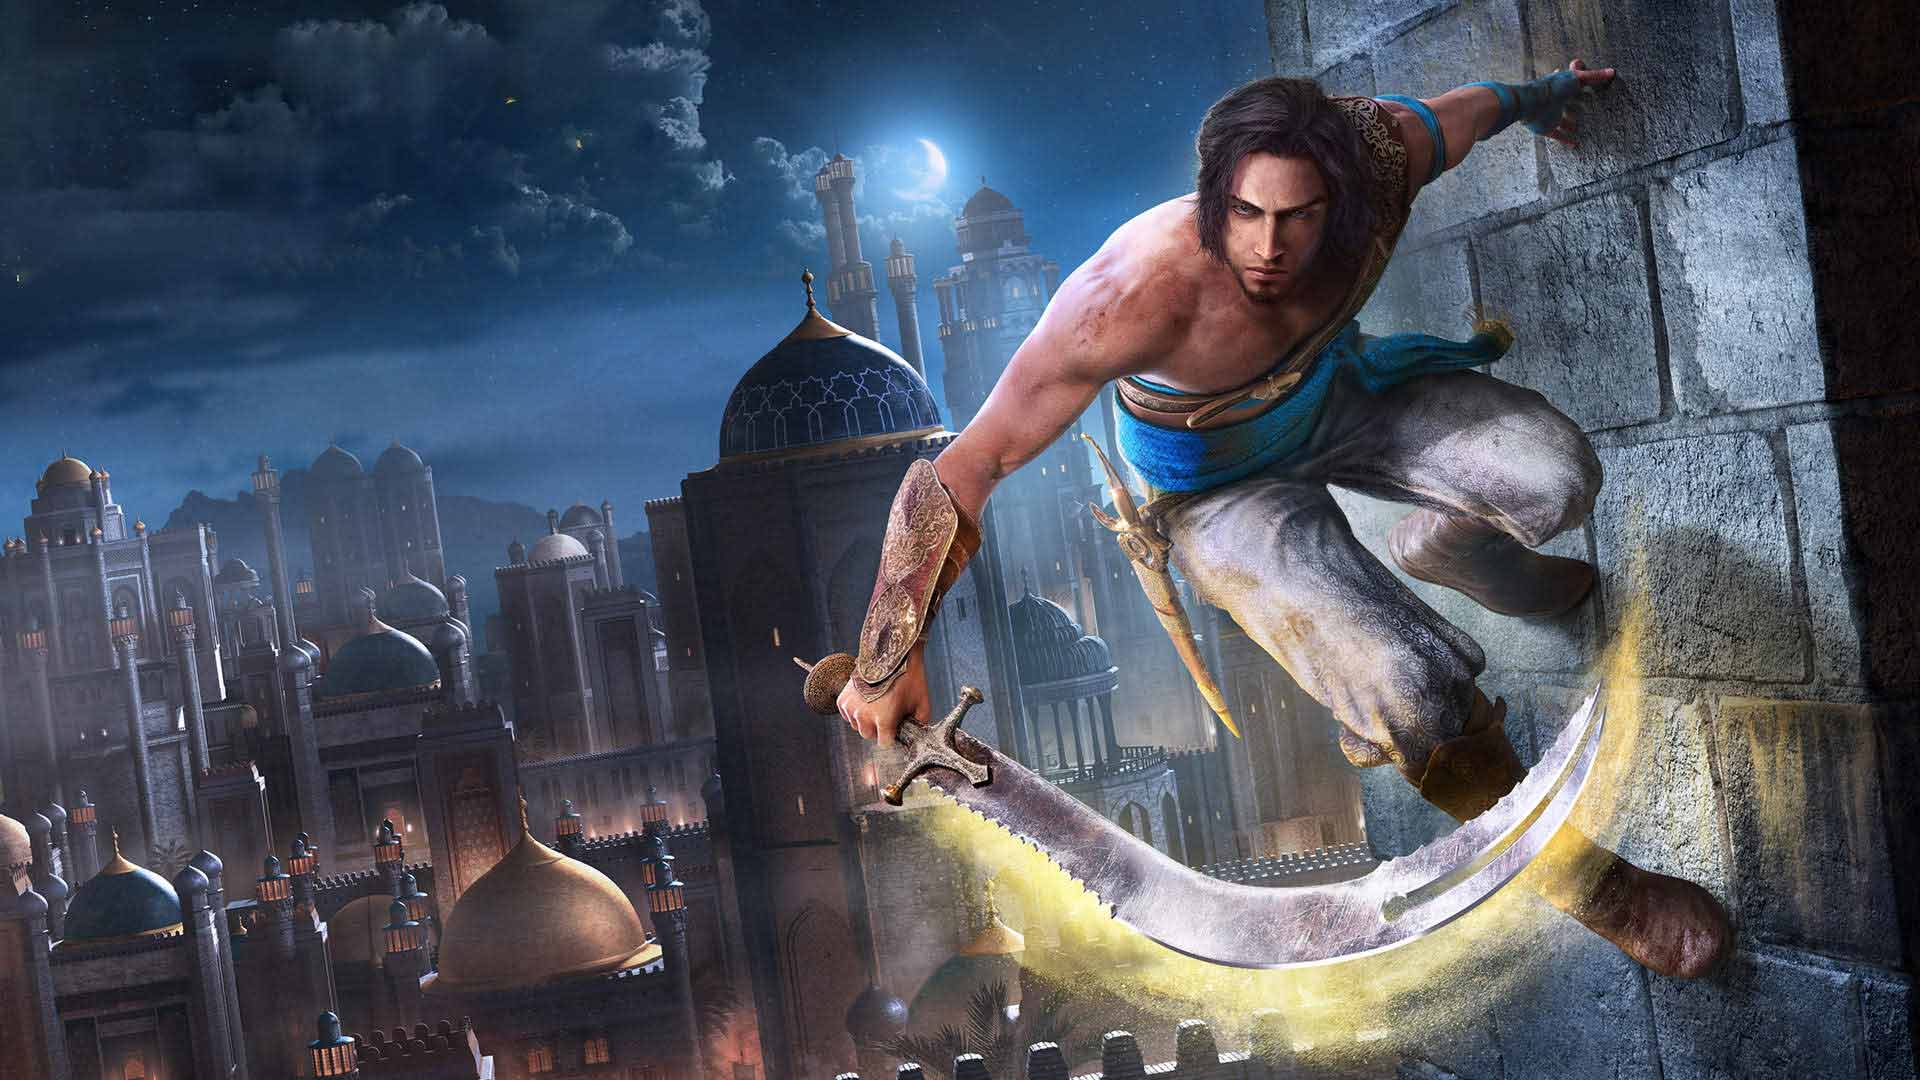 استودیو Ubisoft India به انتقادات نسبت به بازی Prince of Persia Remake واکنش نشان داد